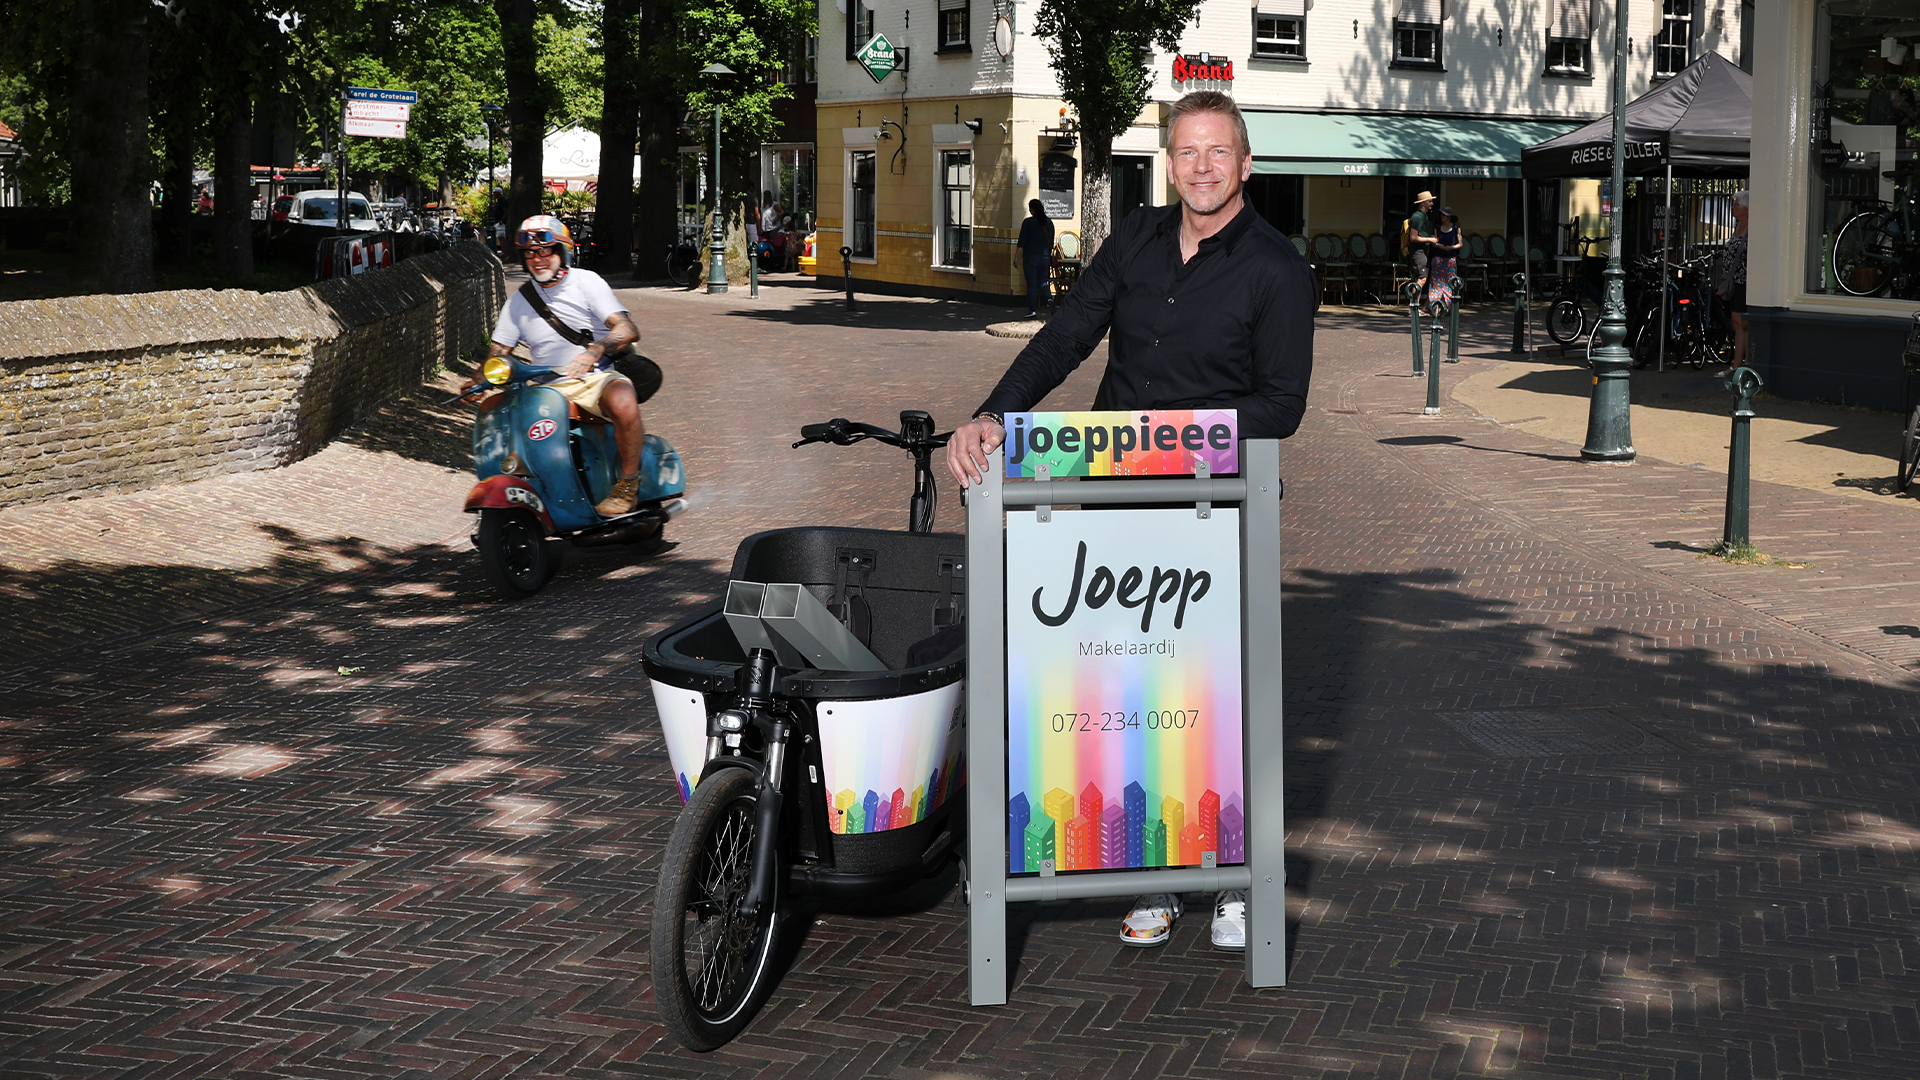 Joepp - All-in Bergen